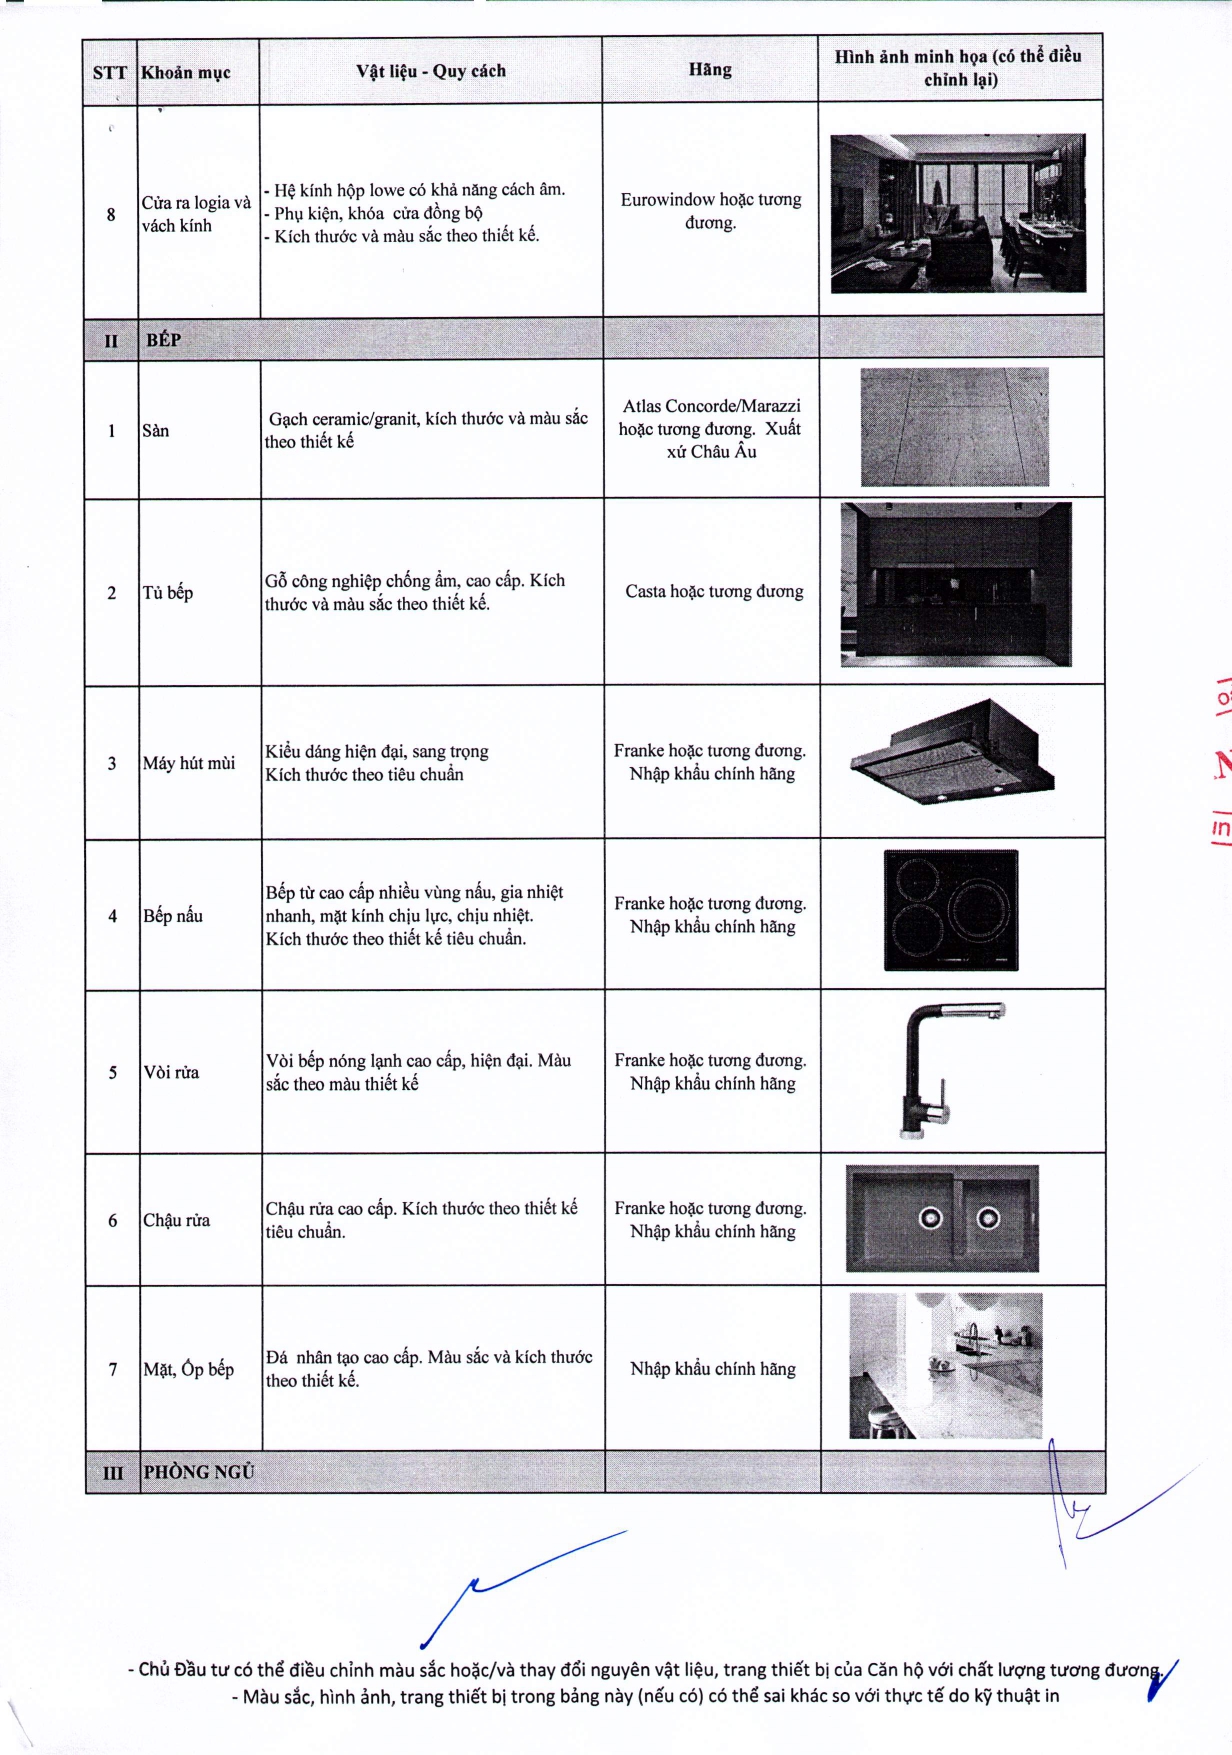 02.08.2019. Danh mục vật liệu và trang thiết bị bên trong căn hộ - Golden River (1)_page-0002